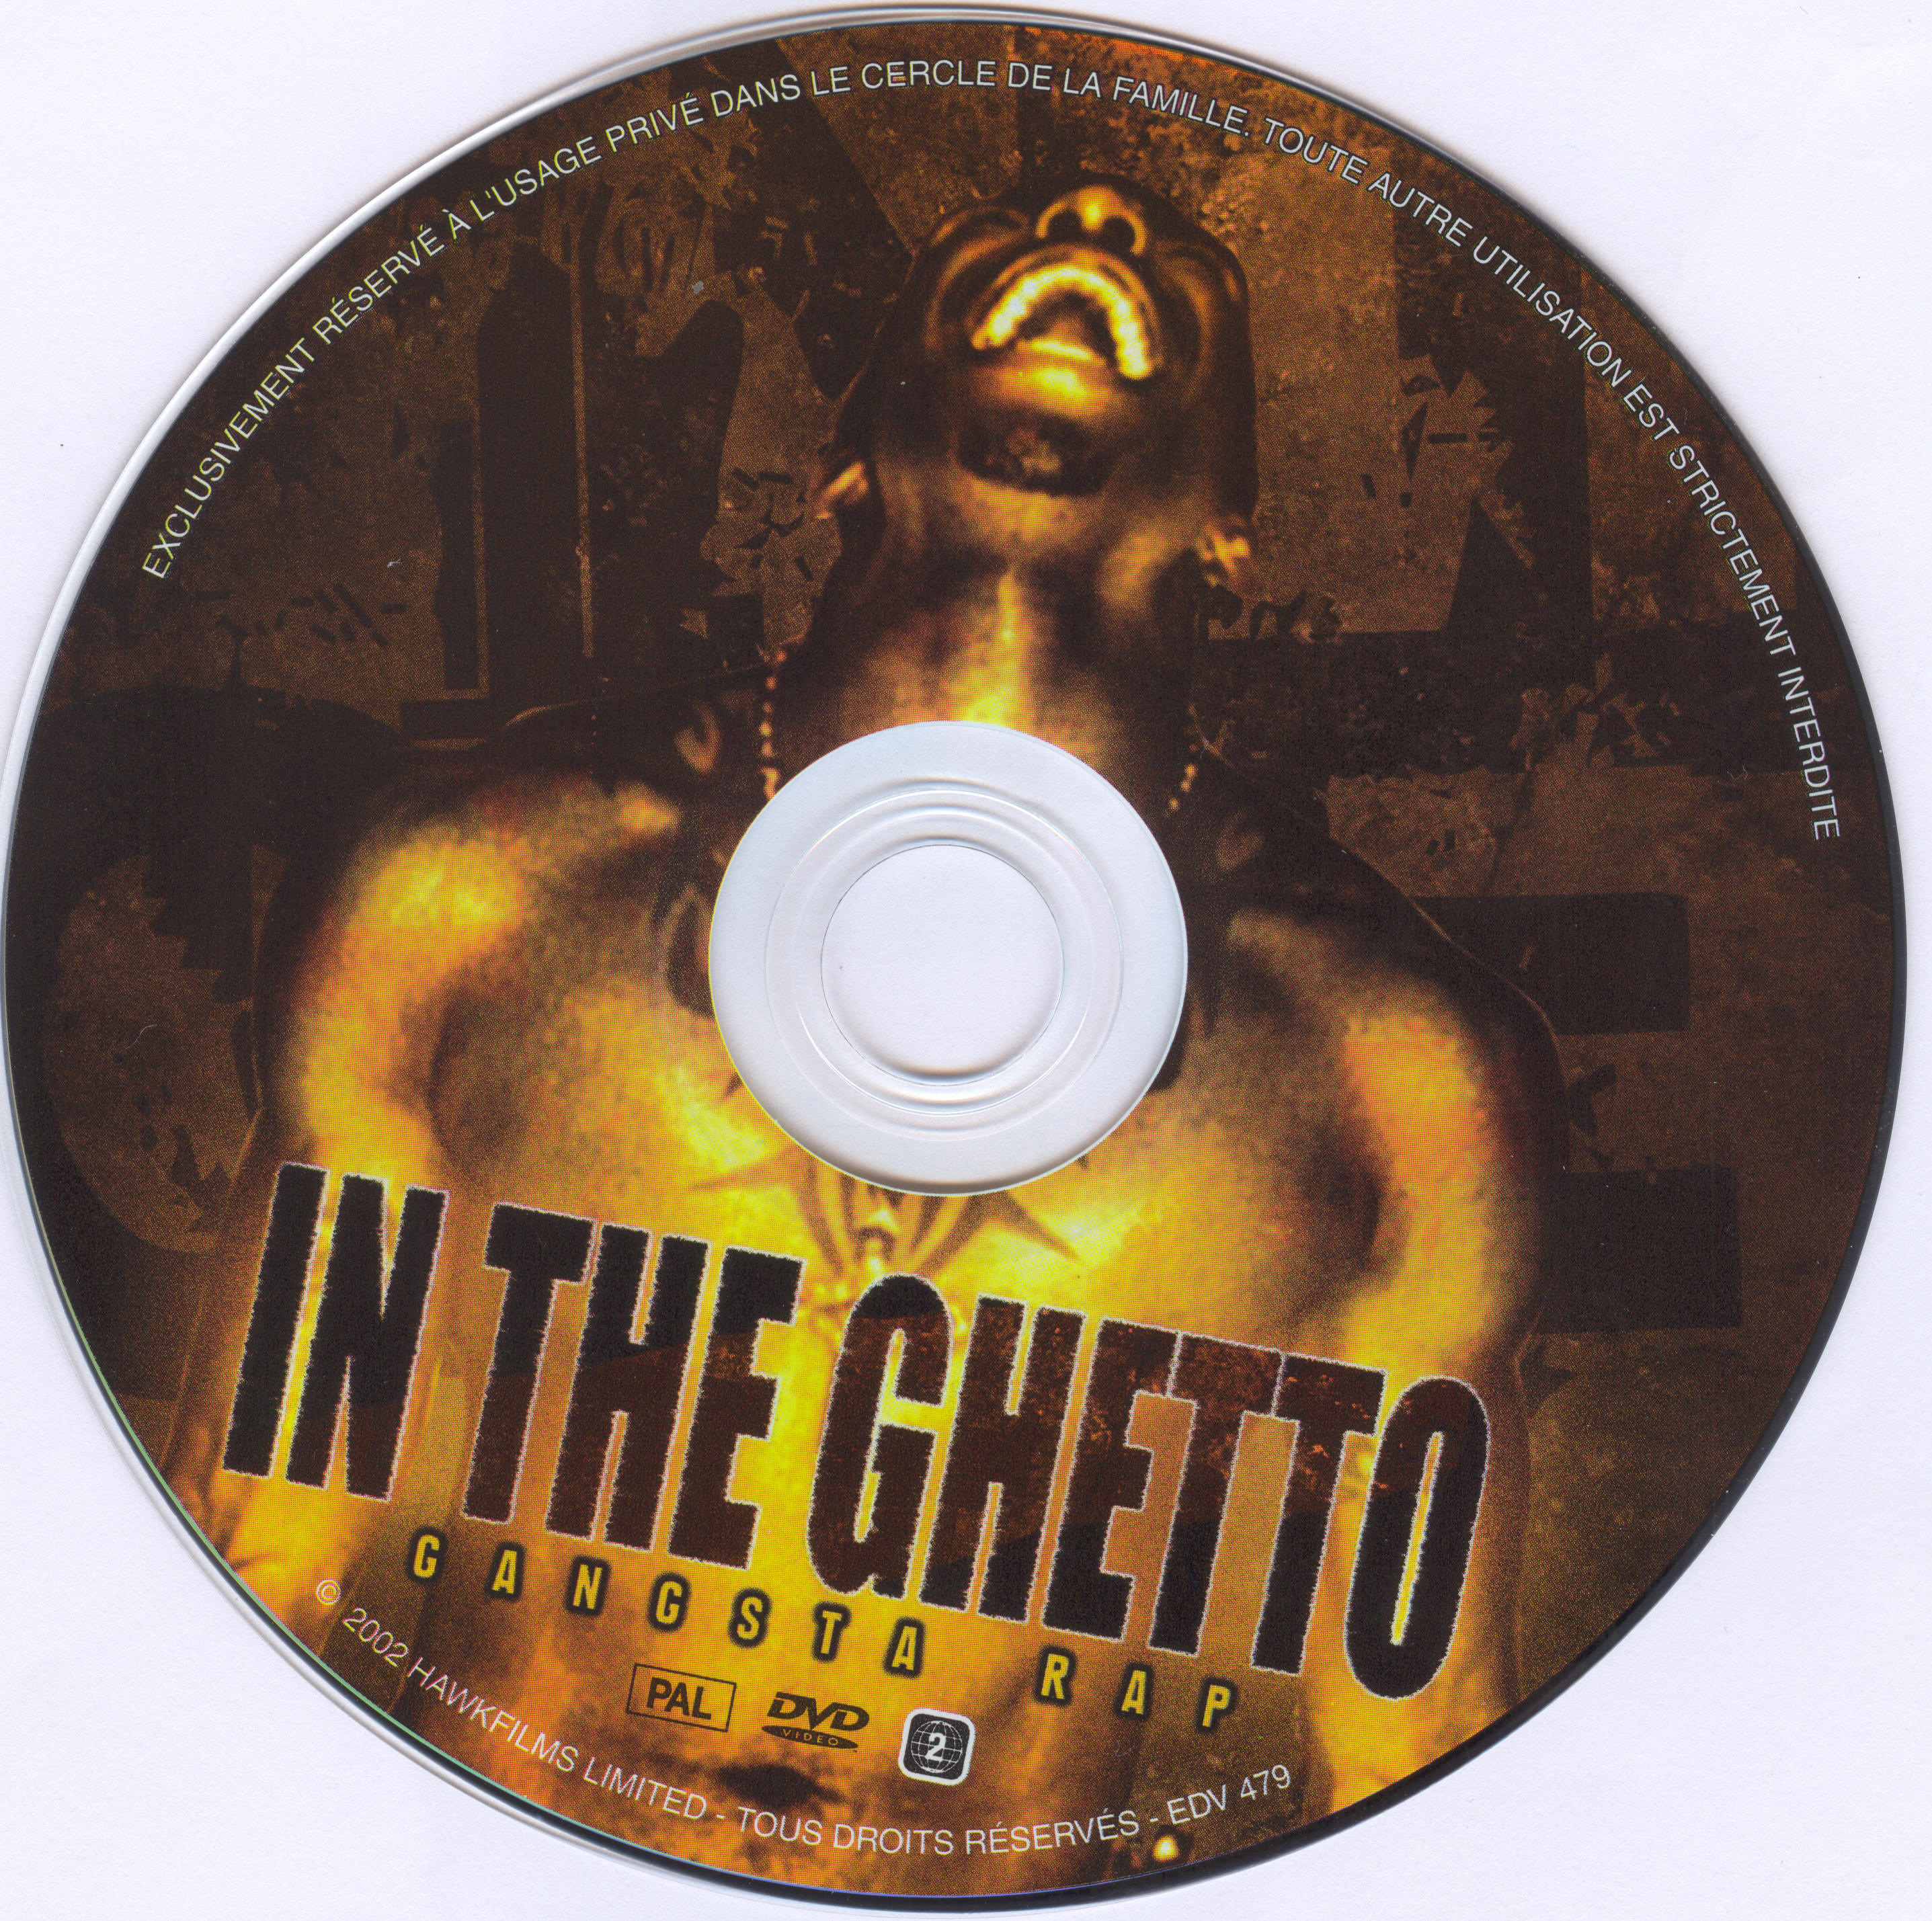 In the ghetto